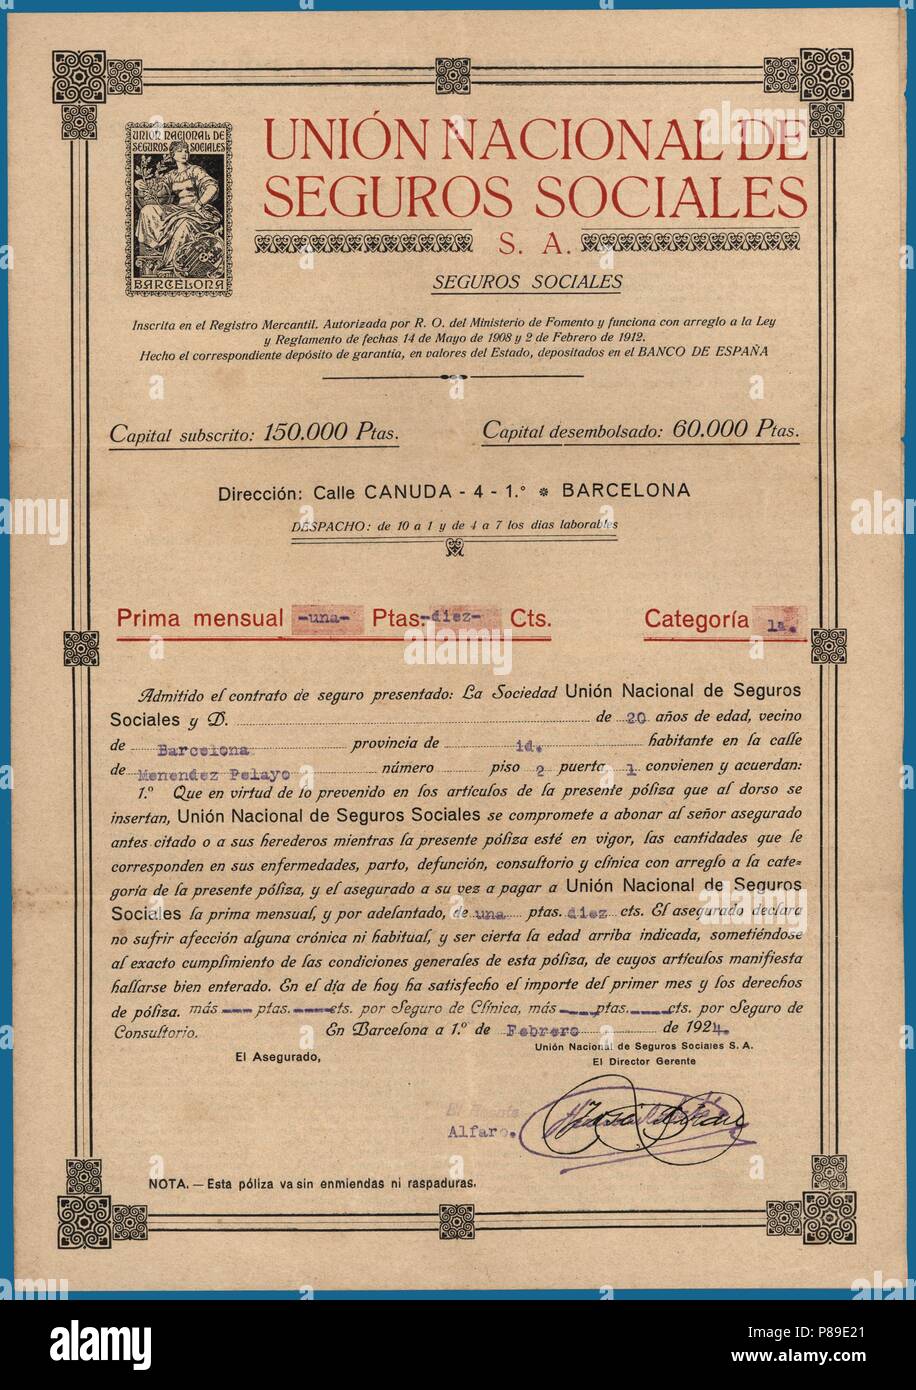 Póliza de seguro de enfermedad. Contrato de la Unión Nacional de Seguros Sociales S.A. Barcelona, año 1924. Stock Photo